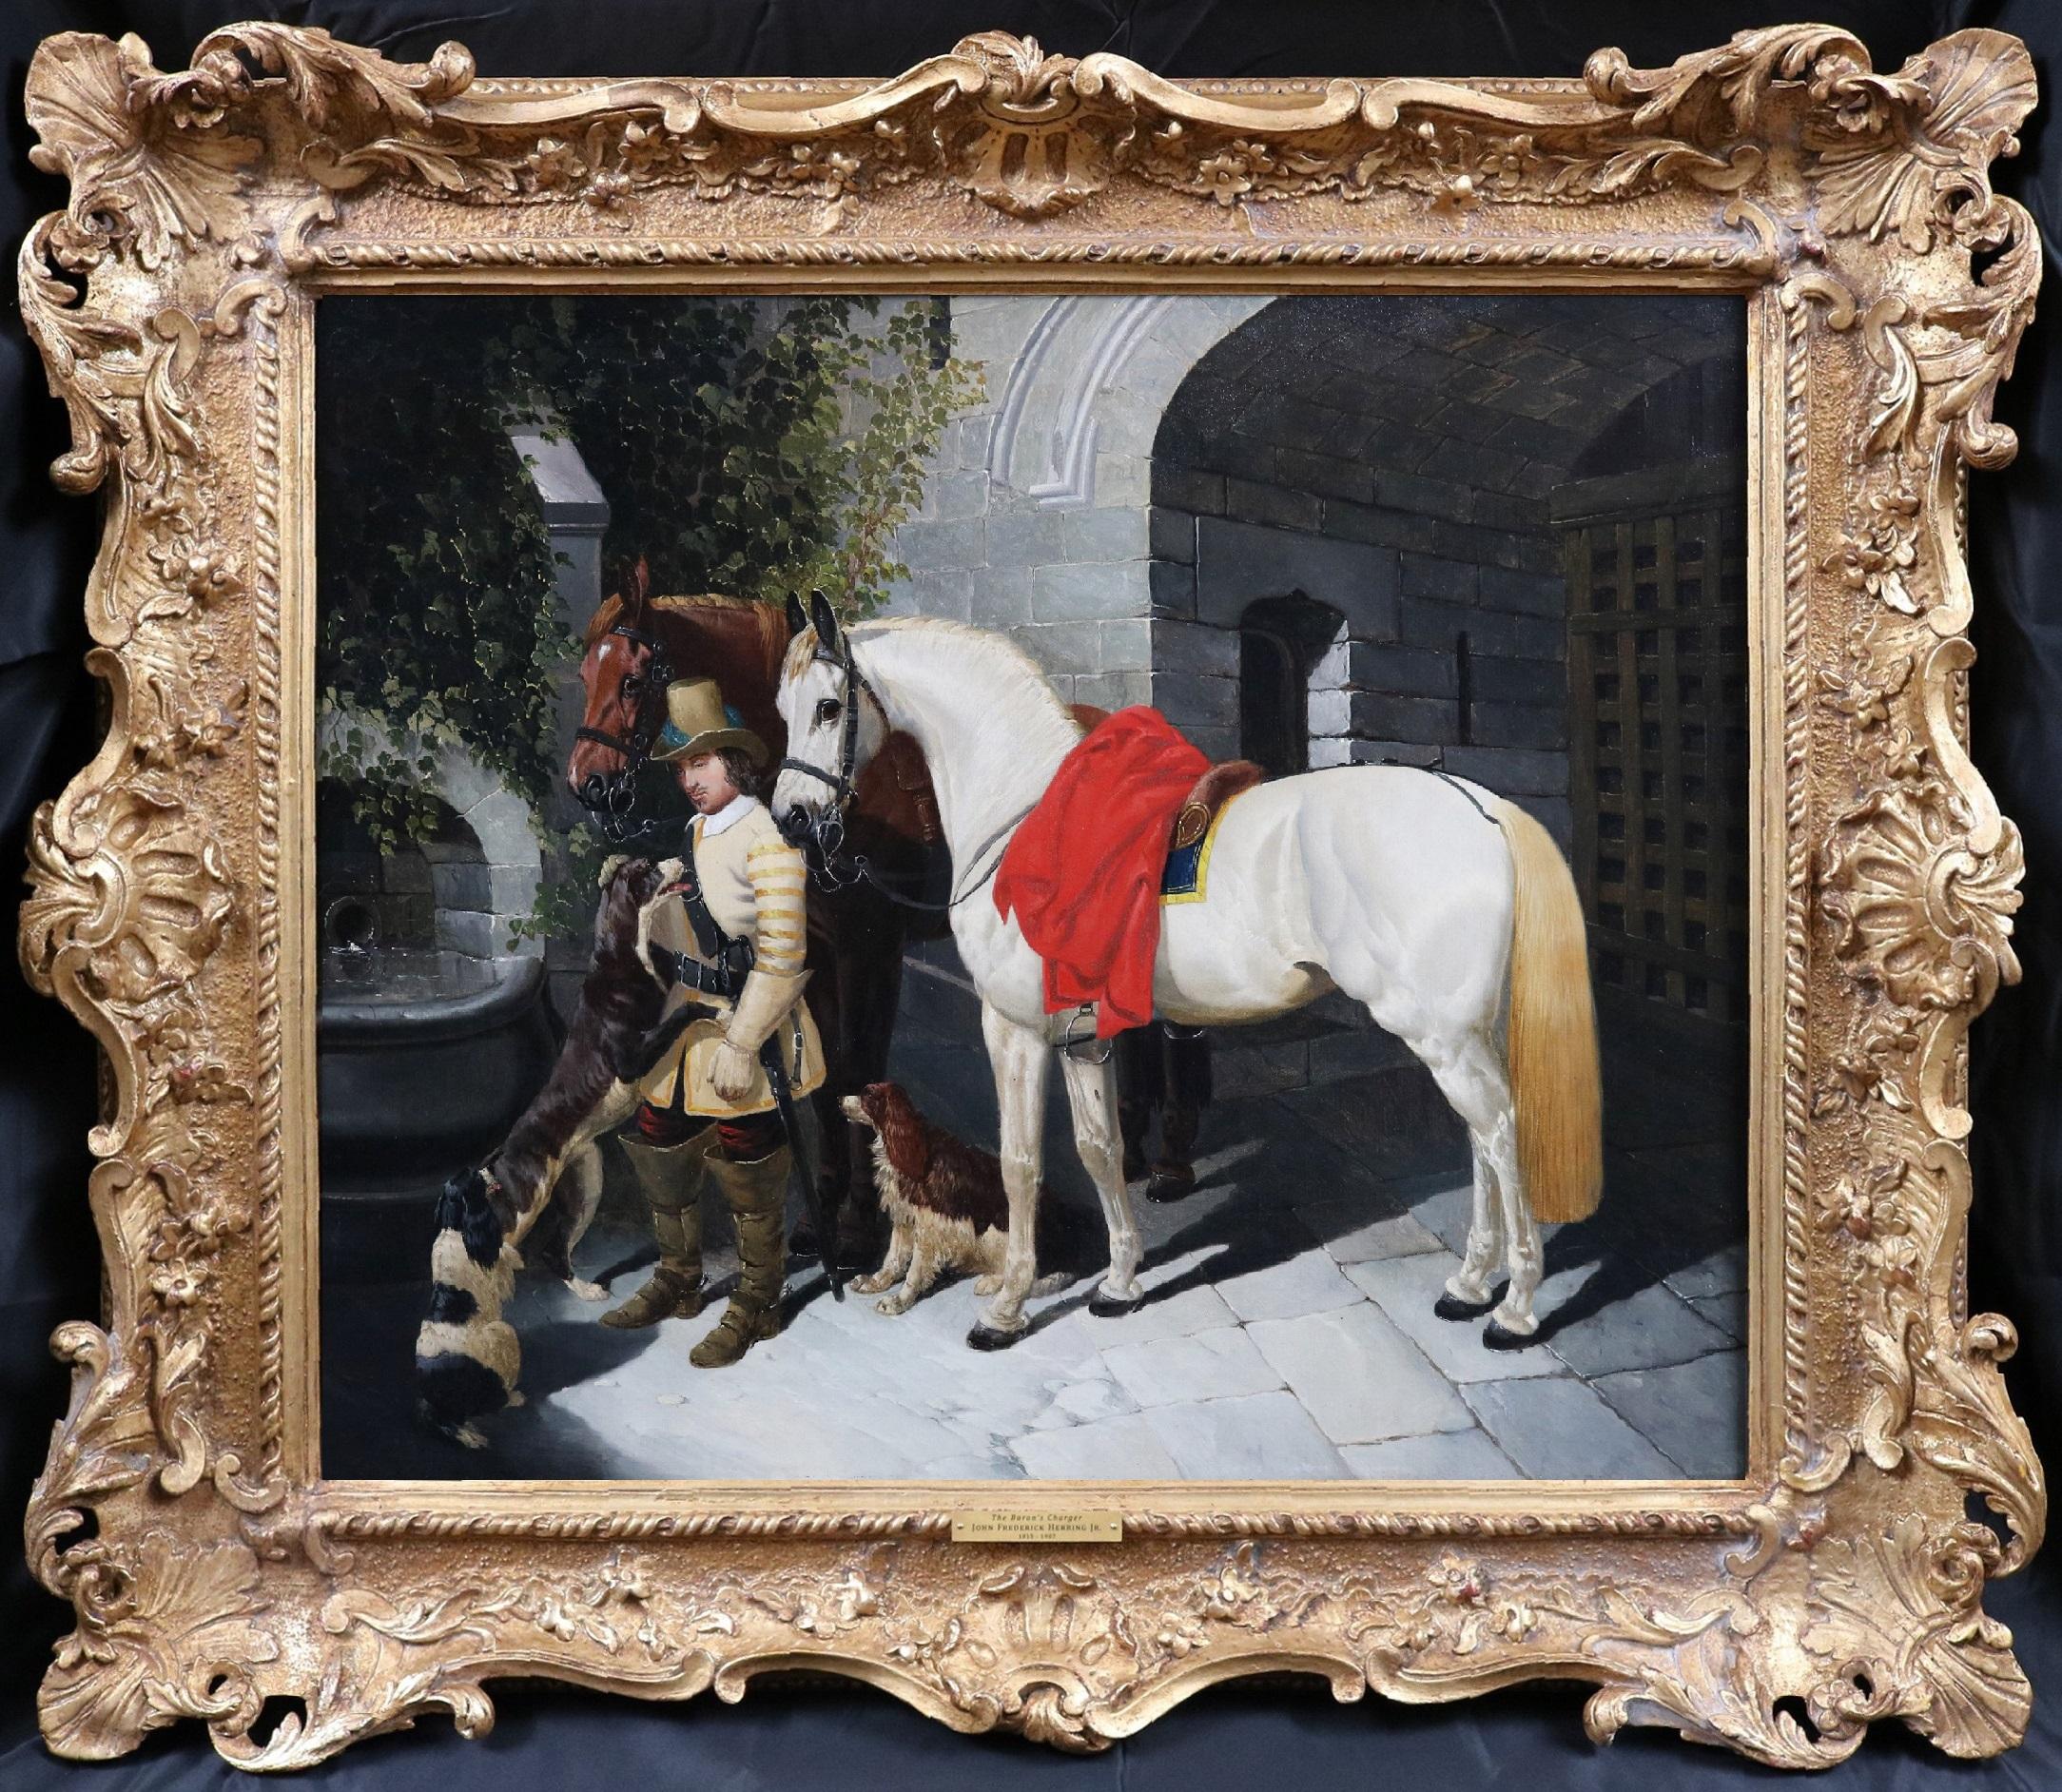 The Baron's Charger – Ölgemälde des Barons – 19. Jahrhunderts, Englischer Nobelman und Schlachtpferde – Painting von John Frederick Herring Jr.